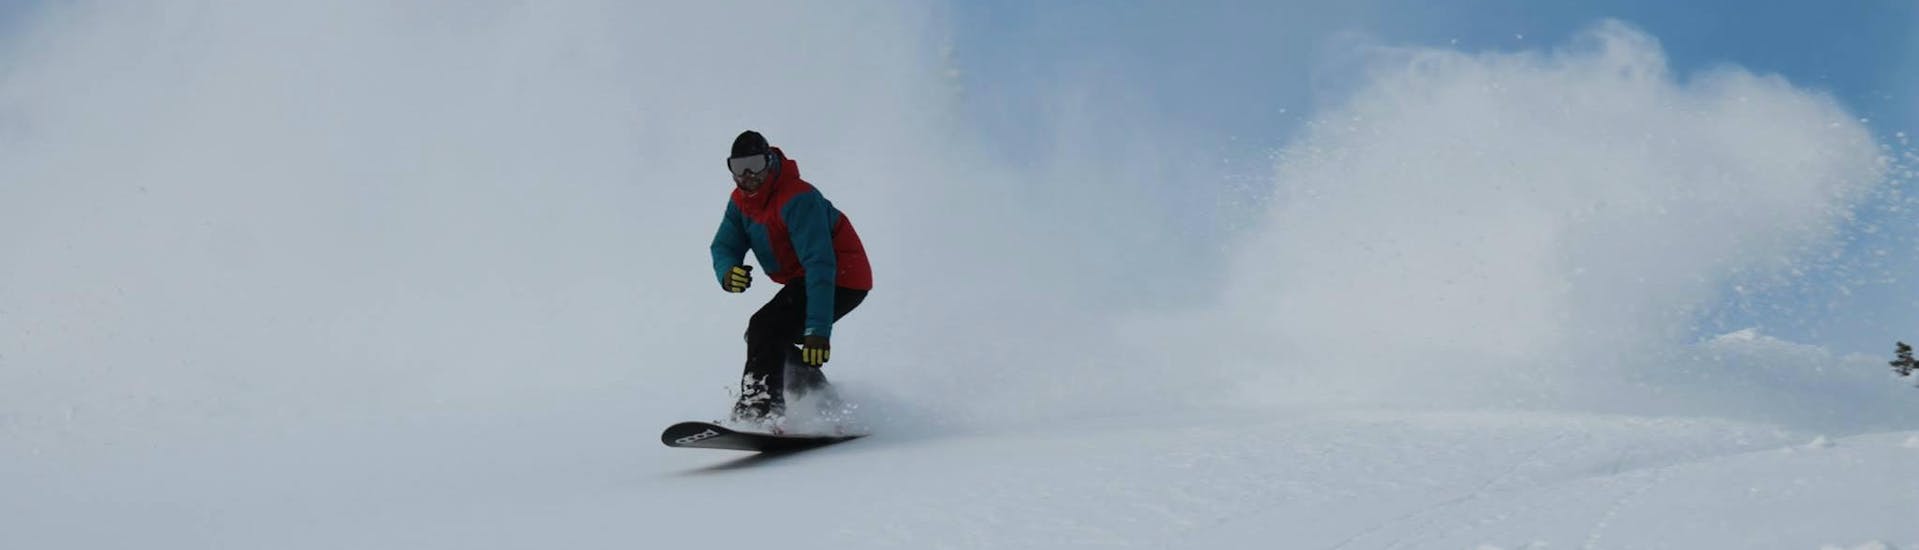 Un snowboarder navigue dans la neige pendant les cours particuliers de snowboard pour enfants et adultes de tous niveaux avec Boardstars Schladming.